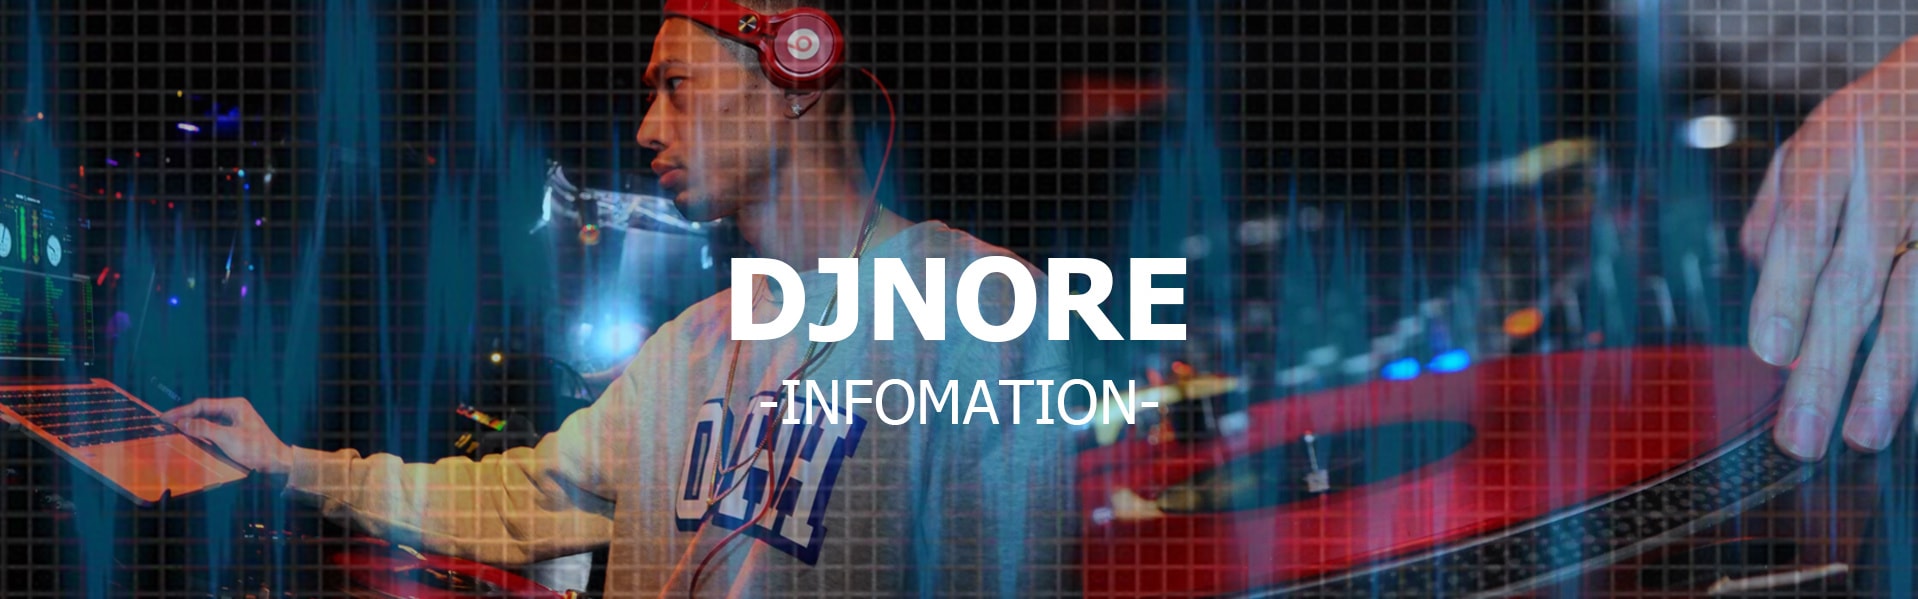 DJNORE info